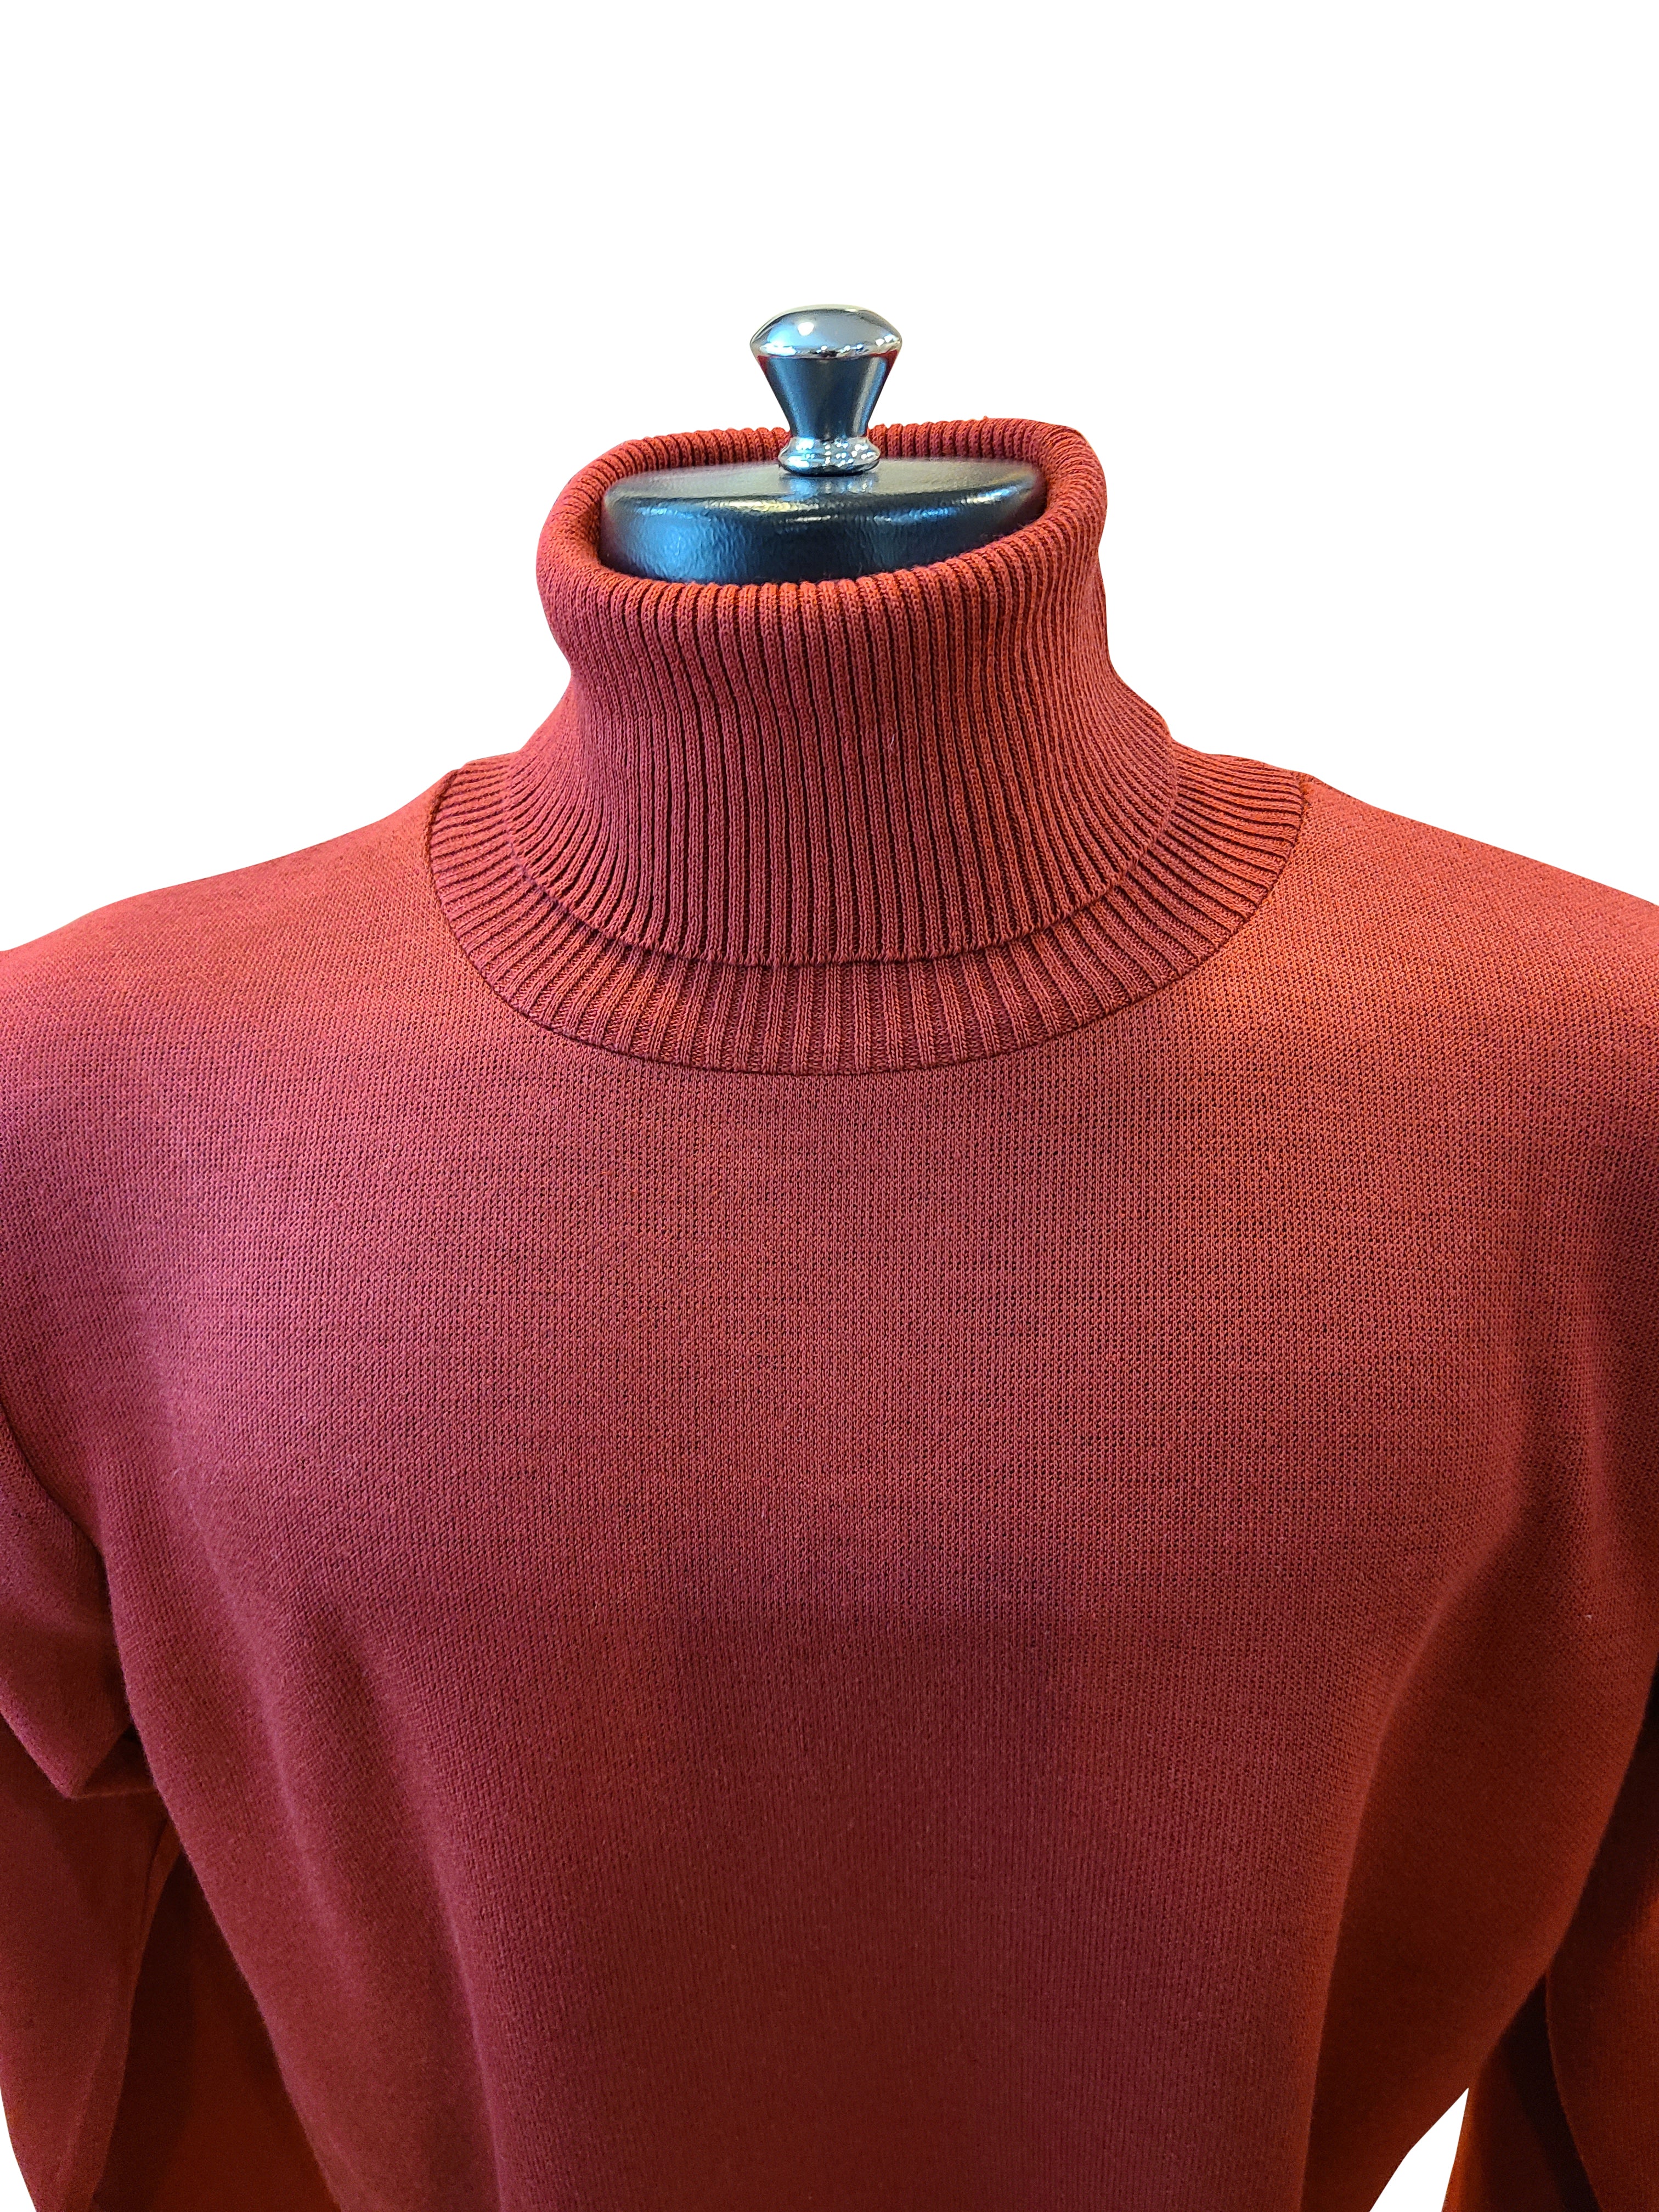 Leonardo Gavino Turtleneck Sweater